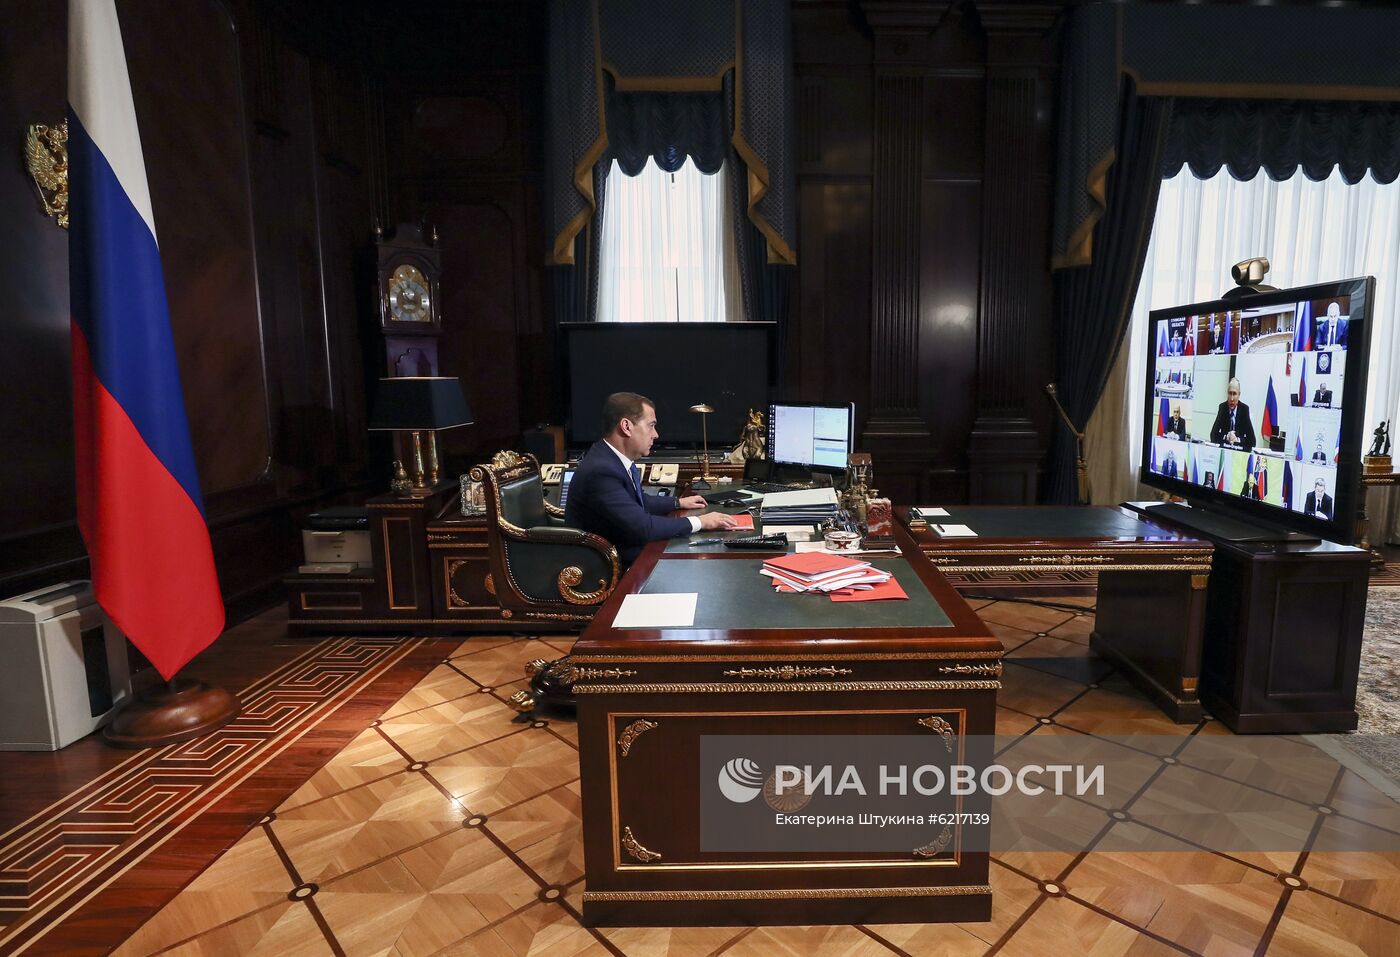 Заместитель председателя Совета безопасности РФ Д. Медведев принял участие в заседание комиссии ВТС